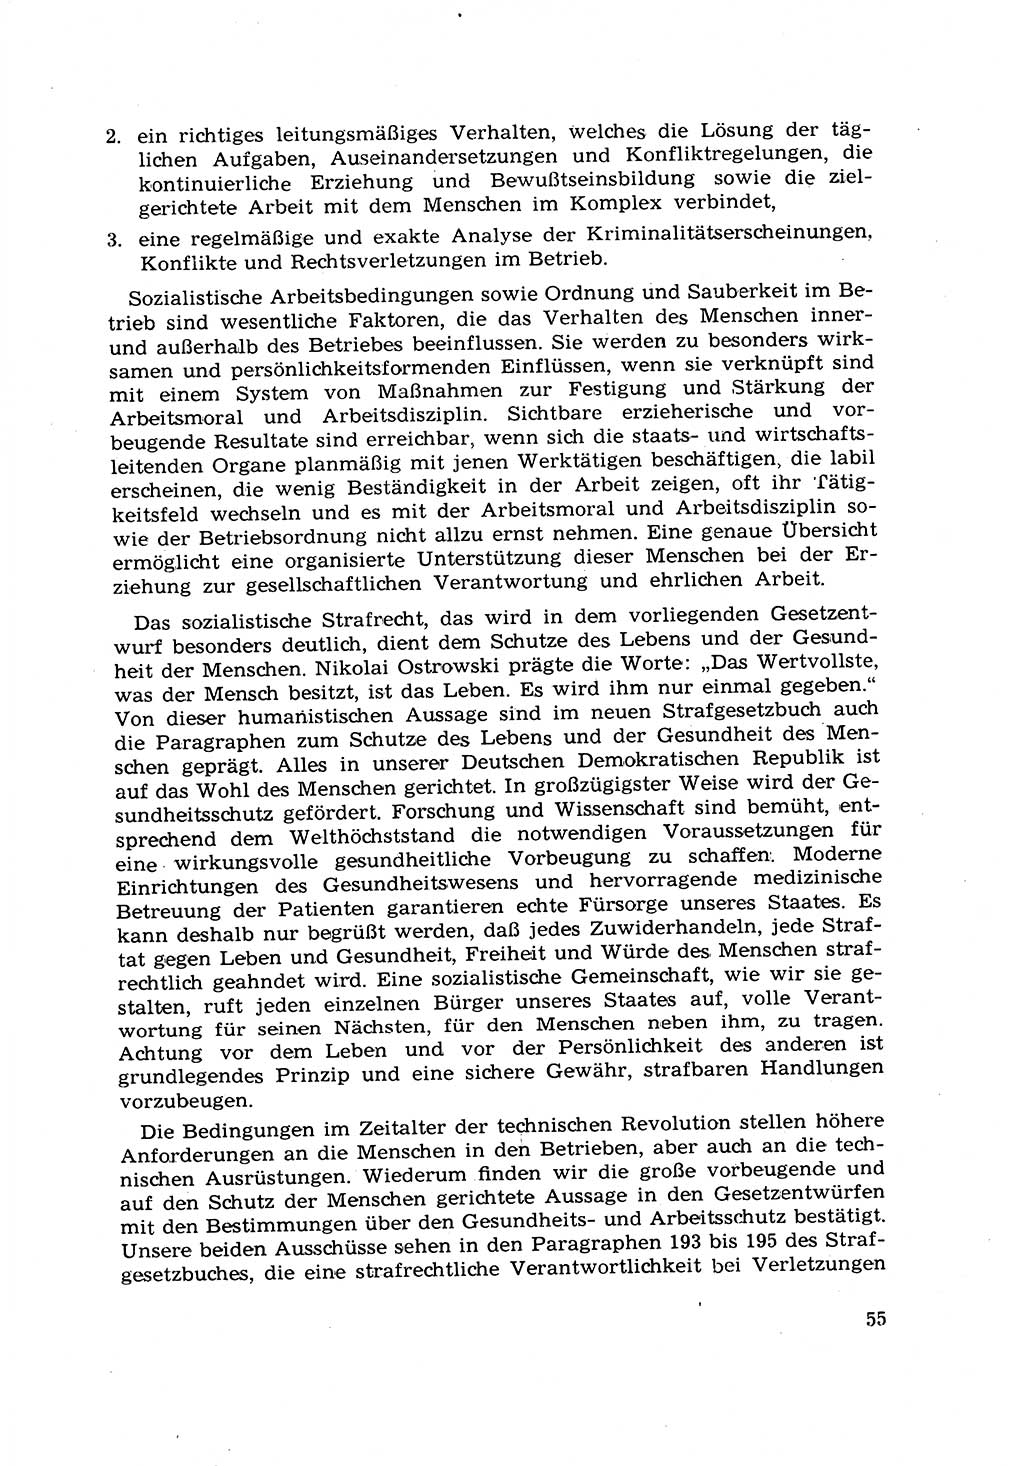 Strafrecht [Deutsche Demokratische Republik (DDR)] 1968, Seite 55 (Strafr. DDR 1968, S. 55)